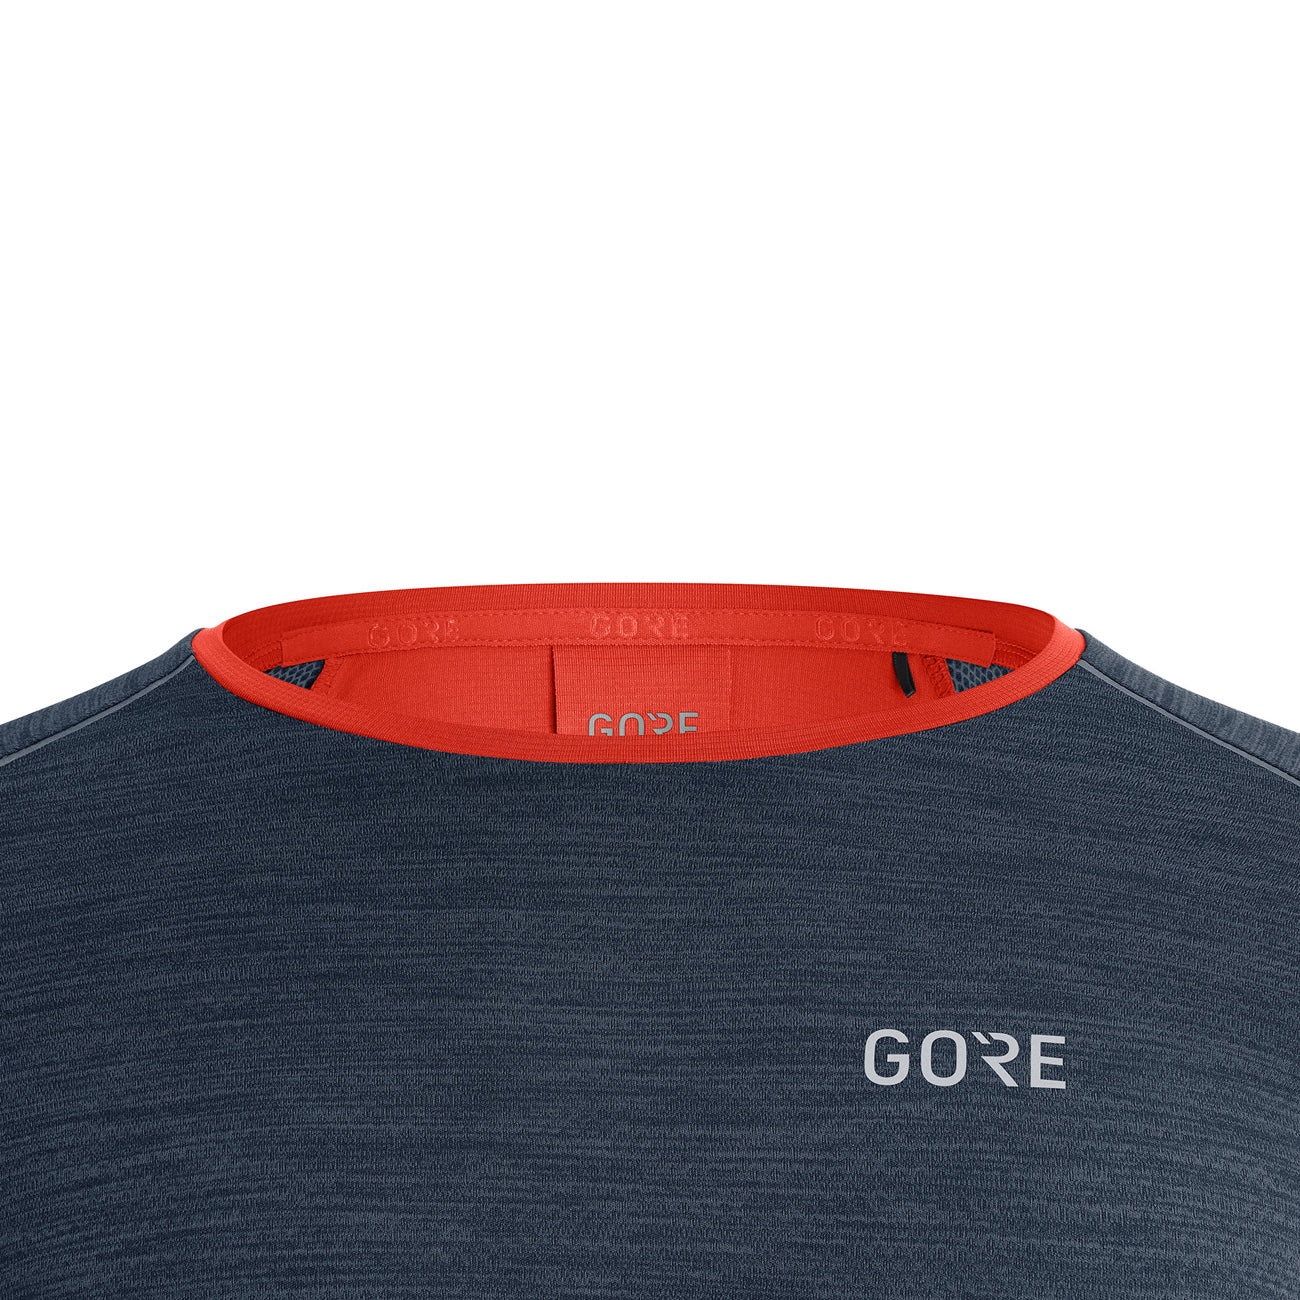 Gore Wear Energetic LS Shirt Men Herren Orbit Blue Fireball